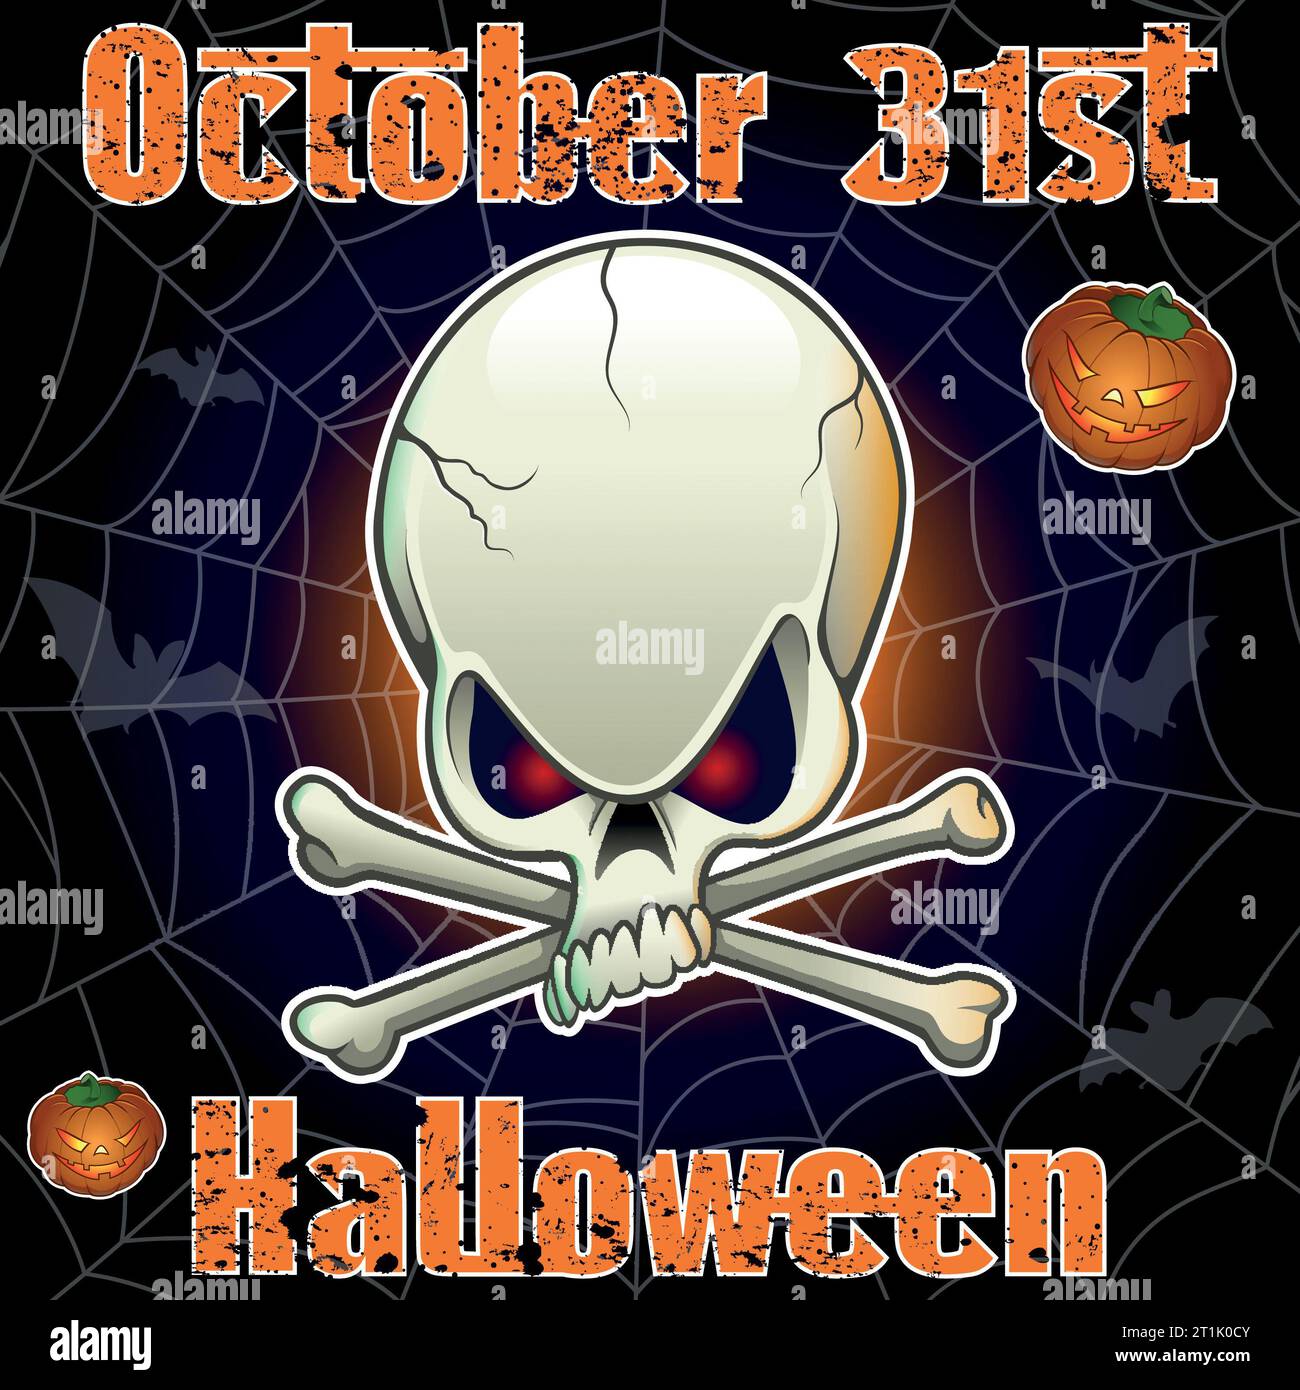 Illustration Halloween - crâne avec des os croisés au premier plan. Fond avec toile d'araignée, chauves-souris, citrouilles. Texte : 31 octobre Halloween Banque D'Images